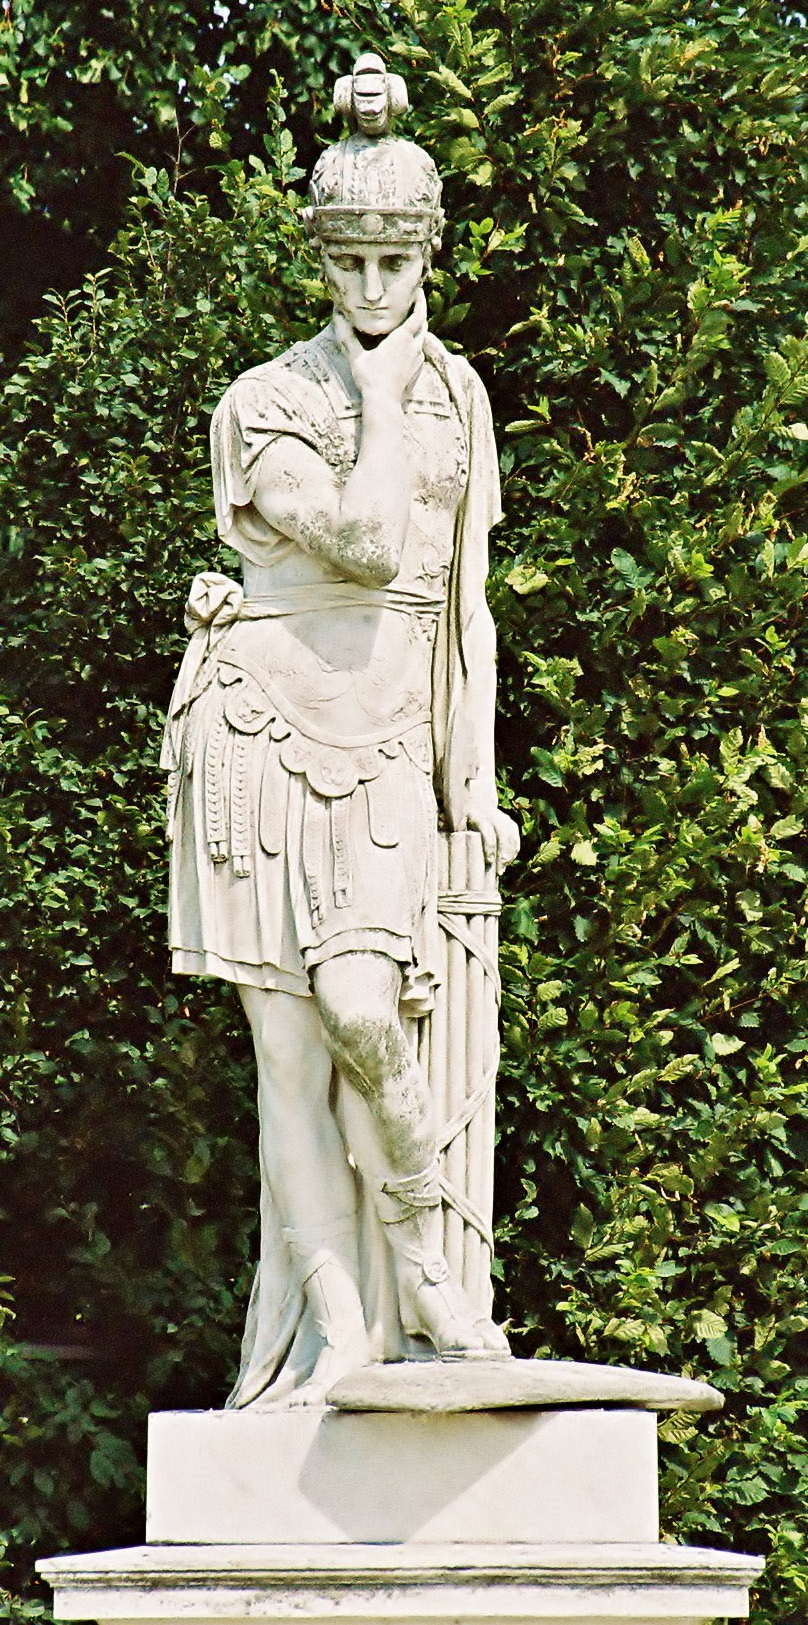 퀸투스 파비우스 막시무스 (Quintus Fabius Maximus, B.C. 280?-203?)